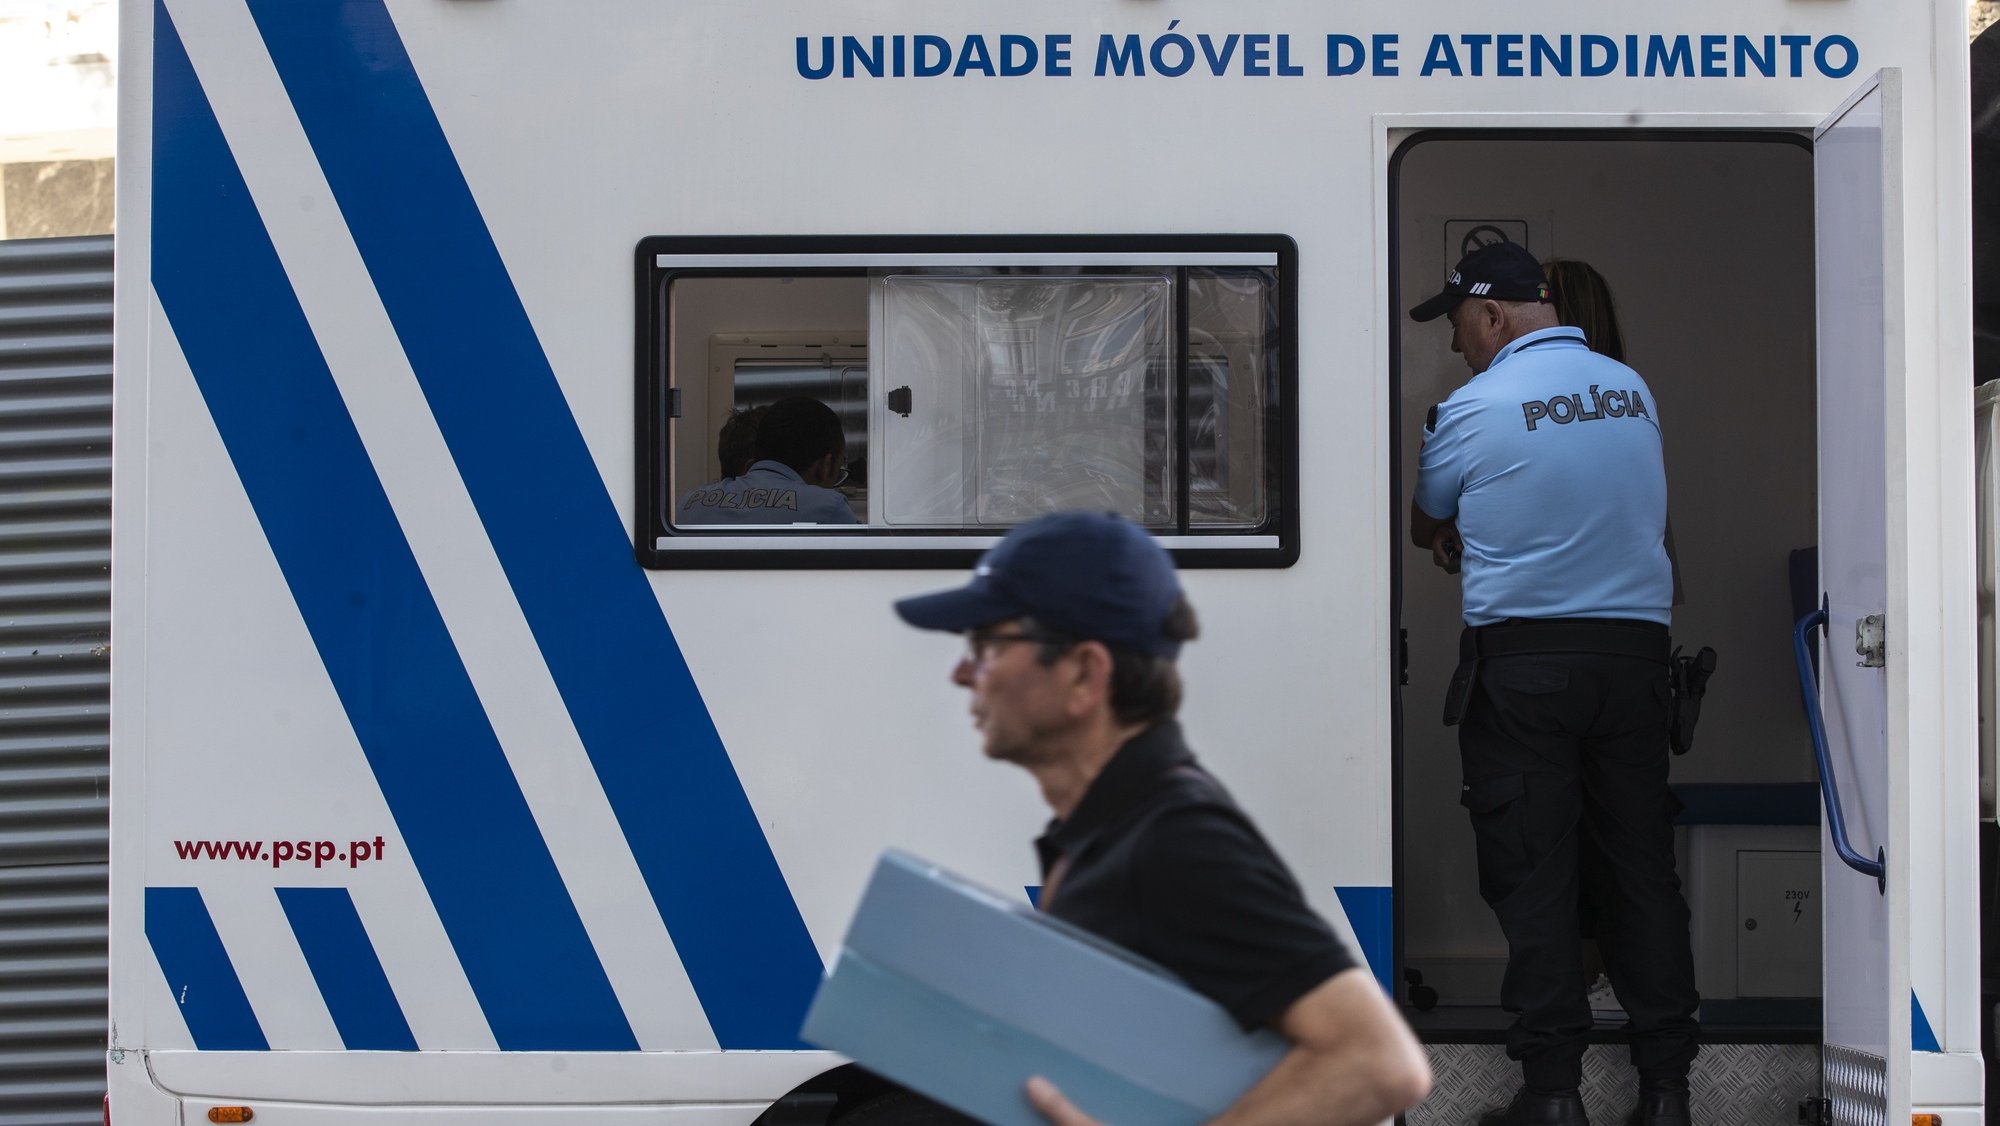 Elemento da Polícia de Segurança Pública (PSP) durante a apresentação das Unidades Móveis de Atendimento da PSP, na Praça da Batalha, no Porto, 28 de julho de 2022. As unidades móveis de atendimento, foram apresentadas hoje, simultaneamente em Lisboa e no Porto. JOSÉ COELHO/LUSA